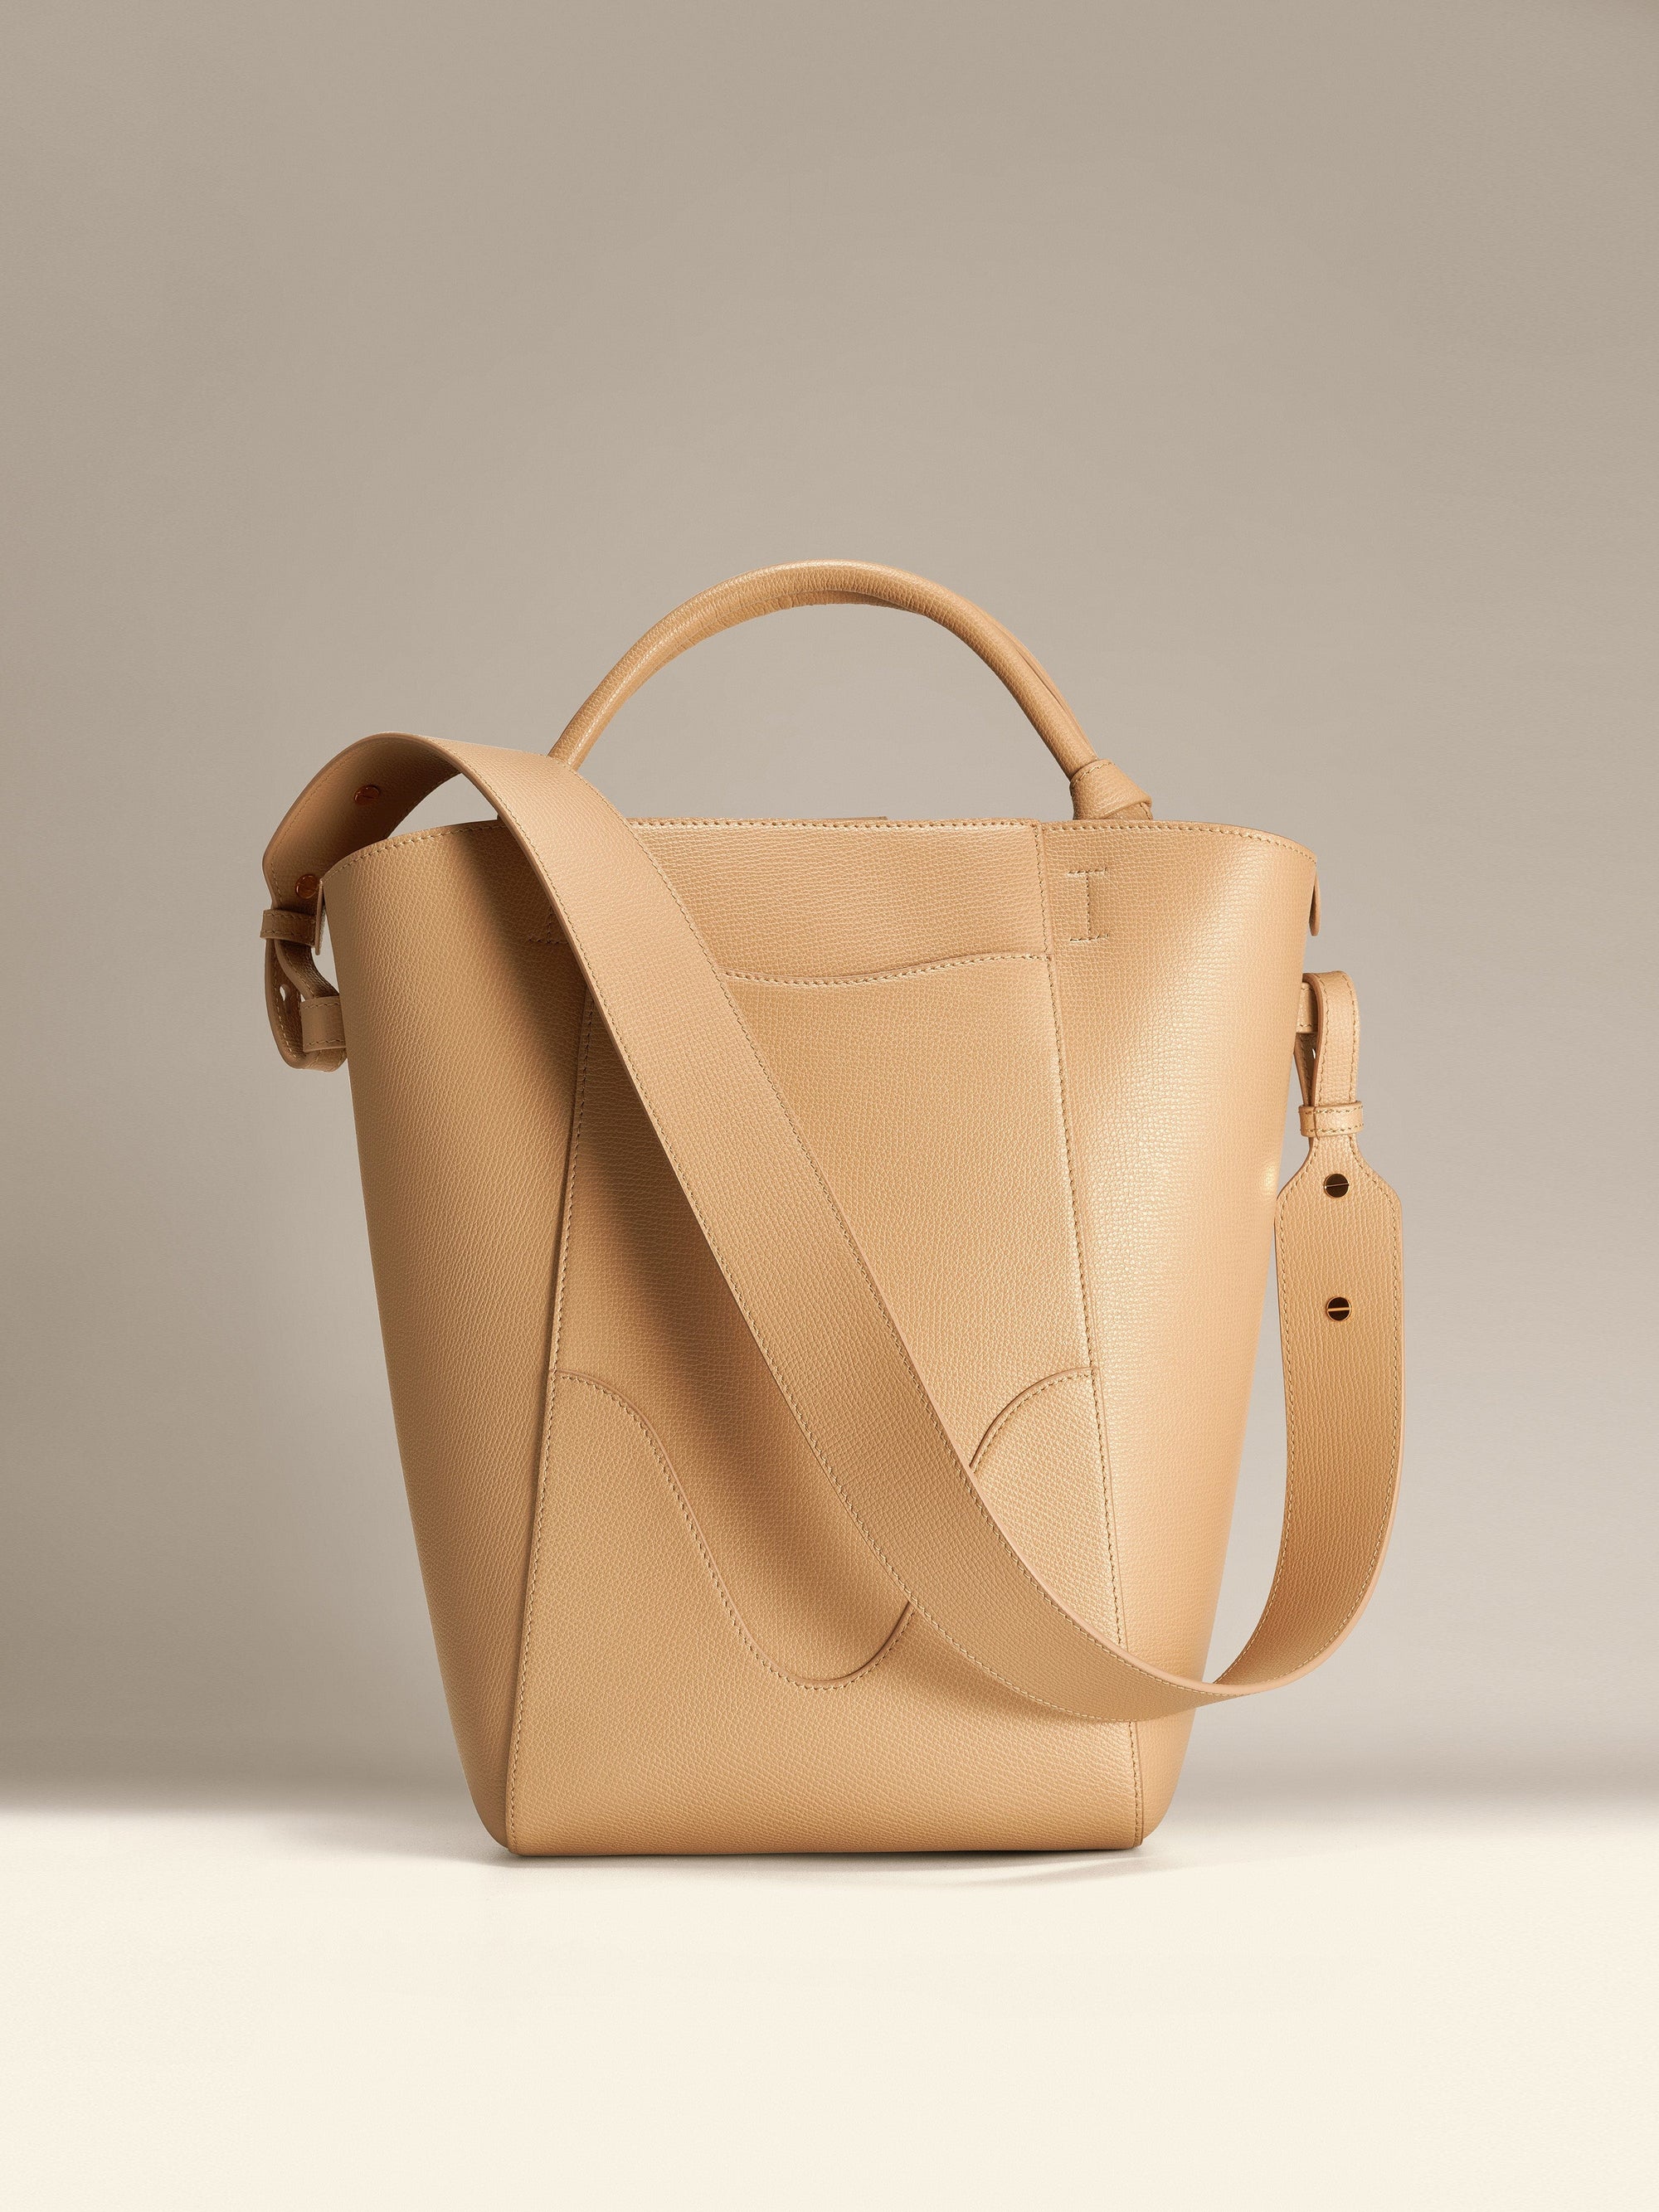 Bucket Bag - Lightweight Corporate Work Bag for Women - Light 